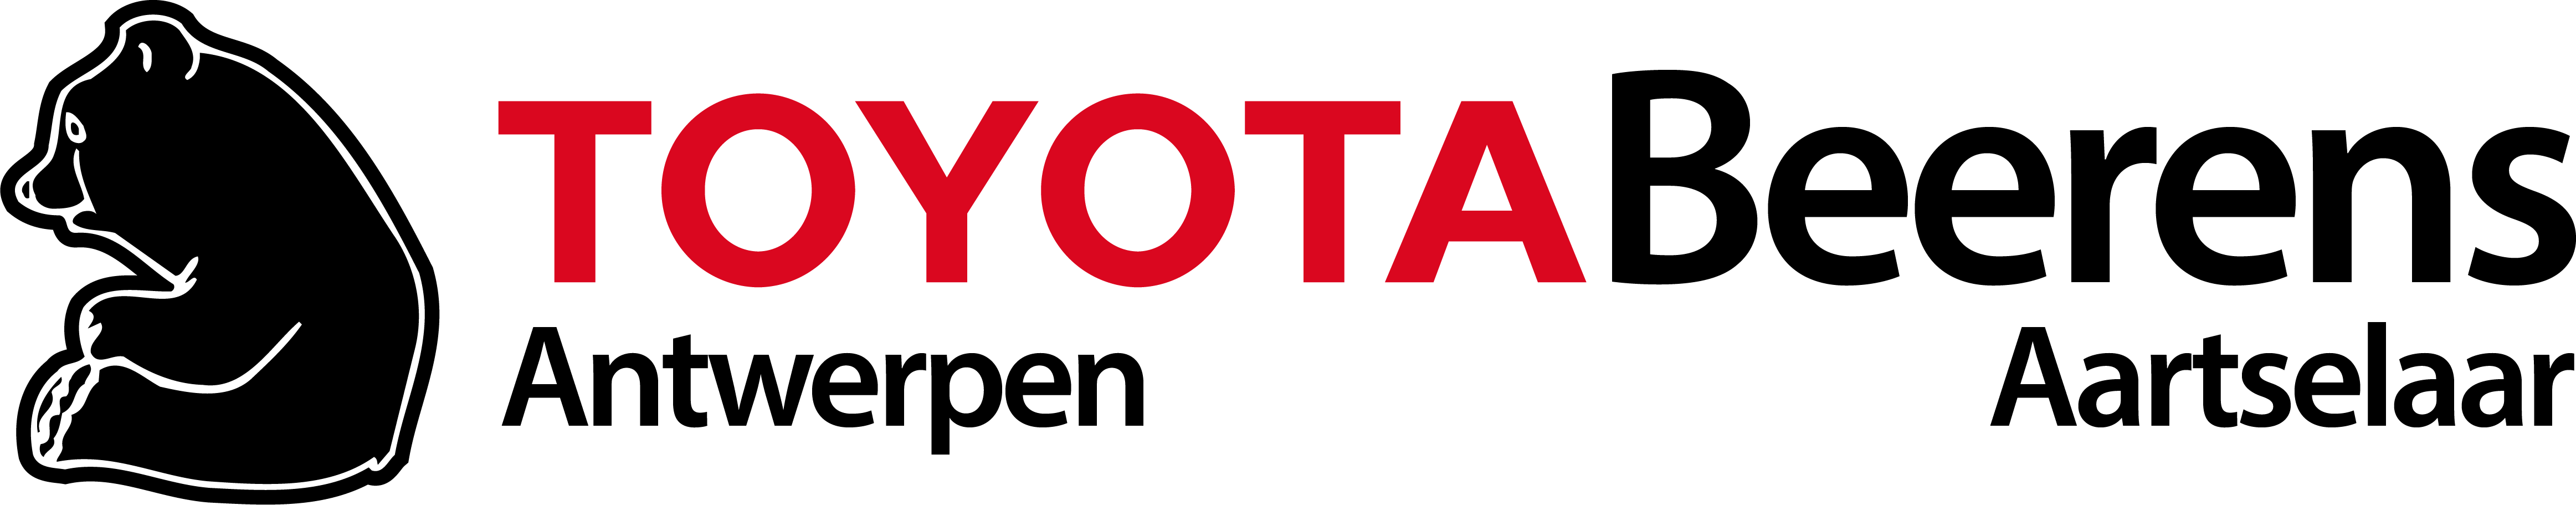 logo Toyota Beerens Aartselaar